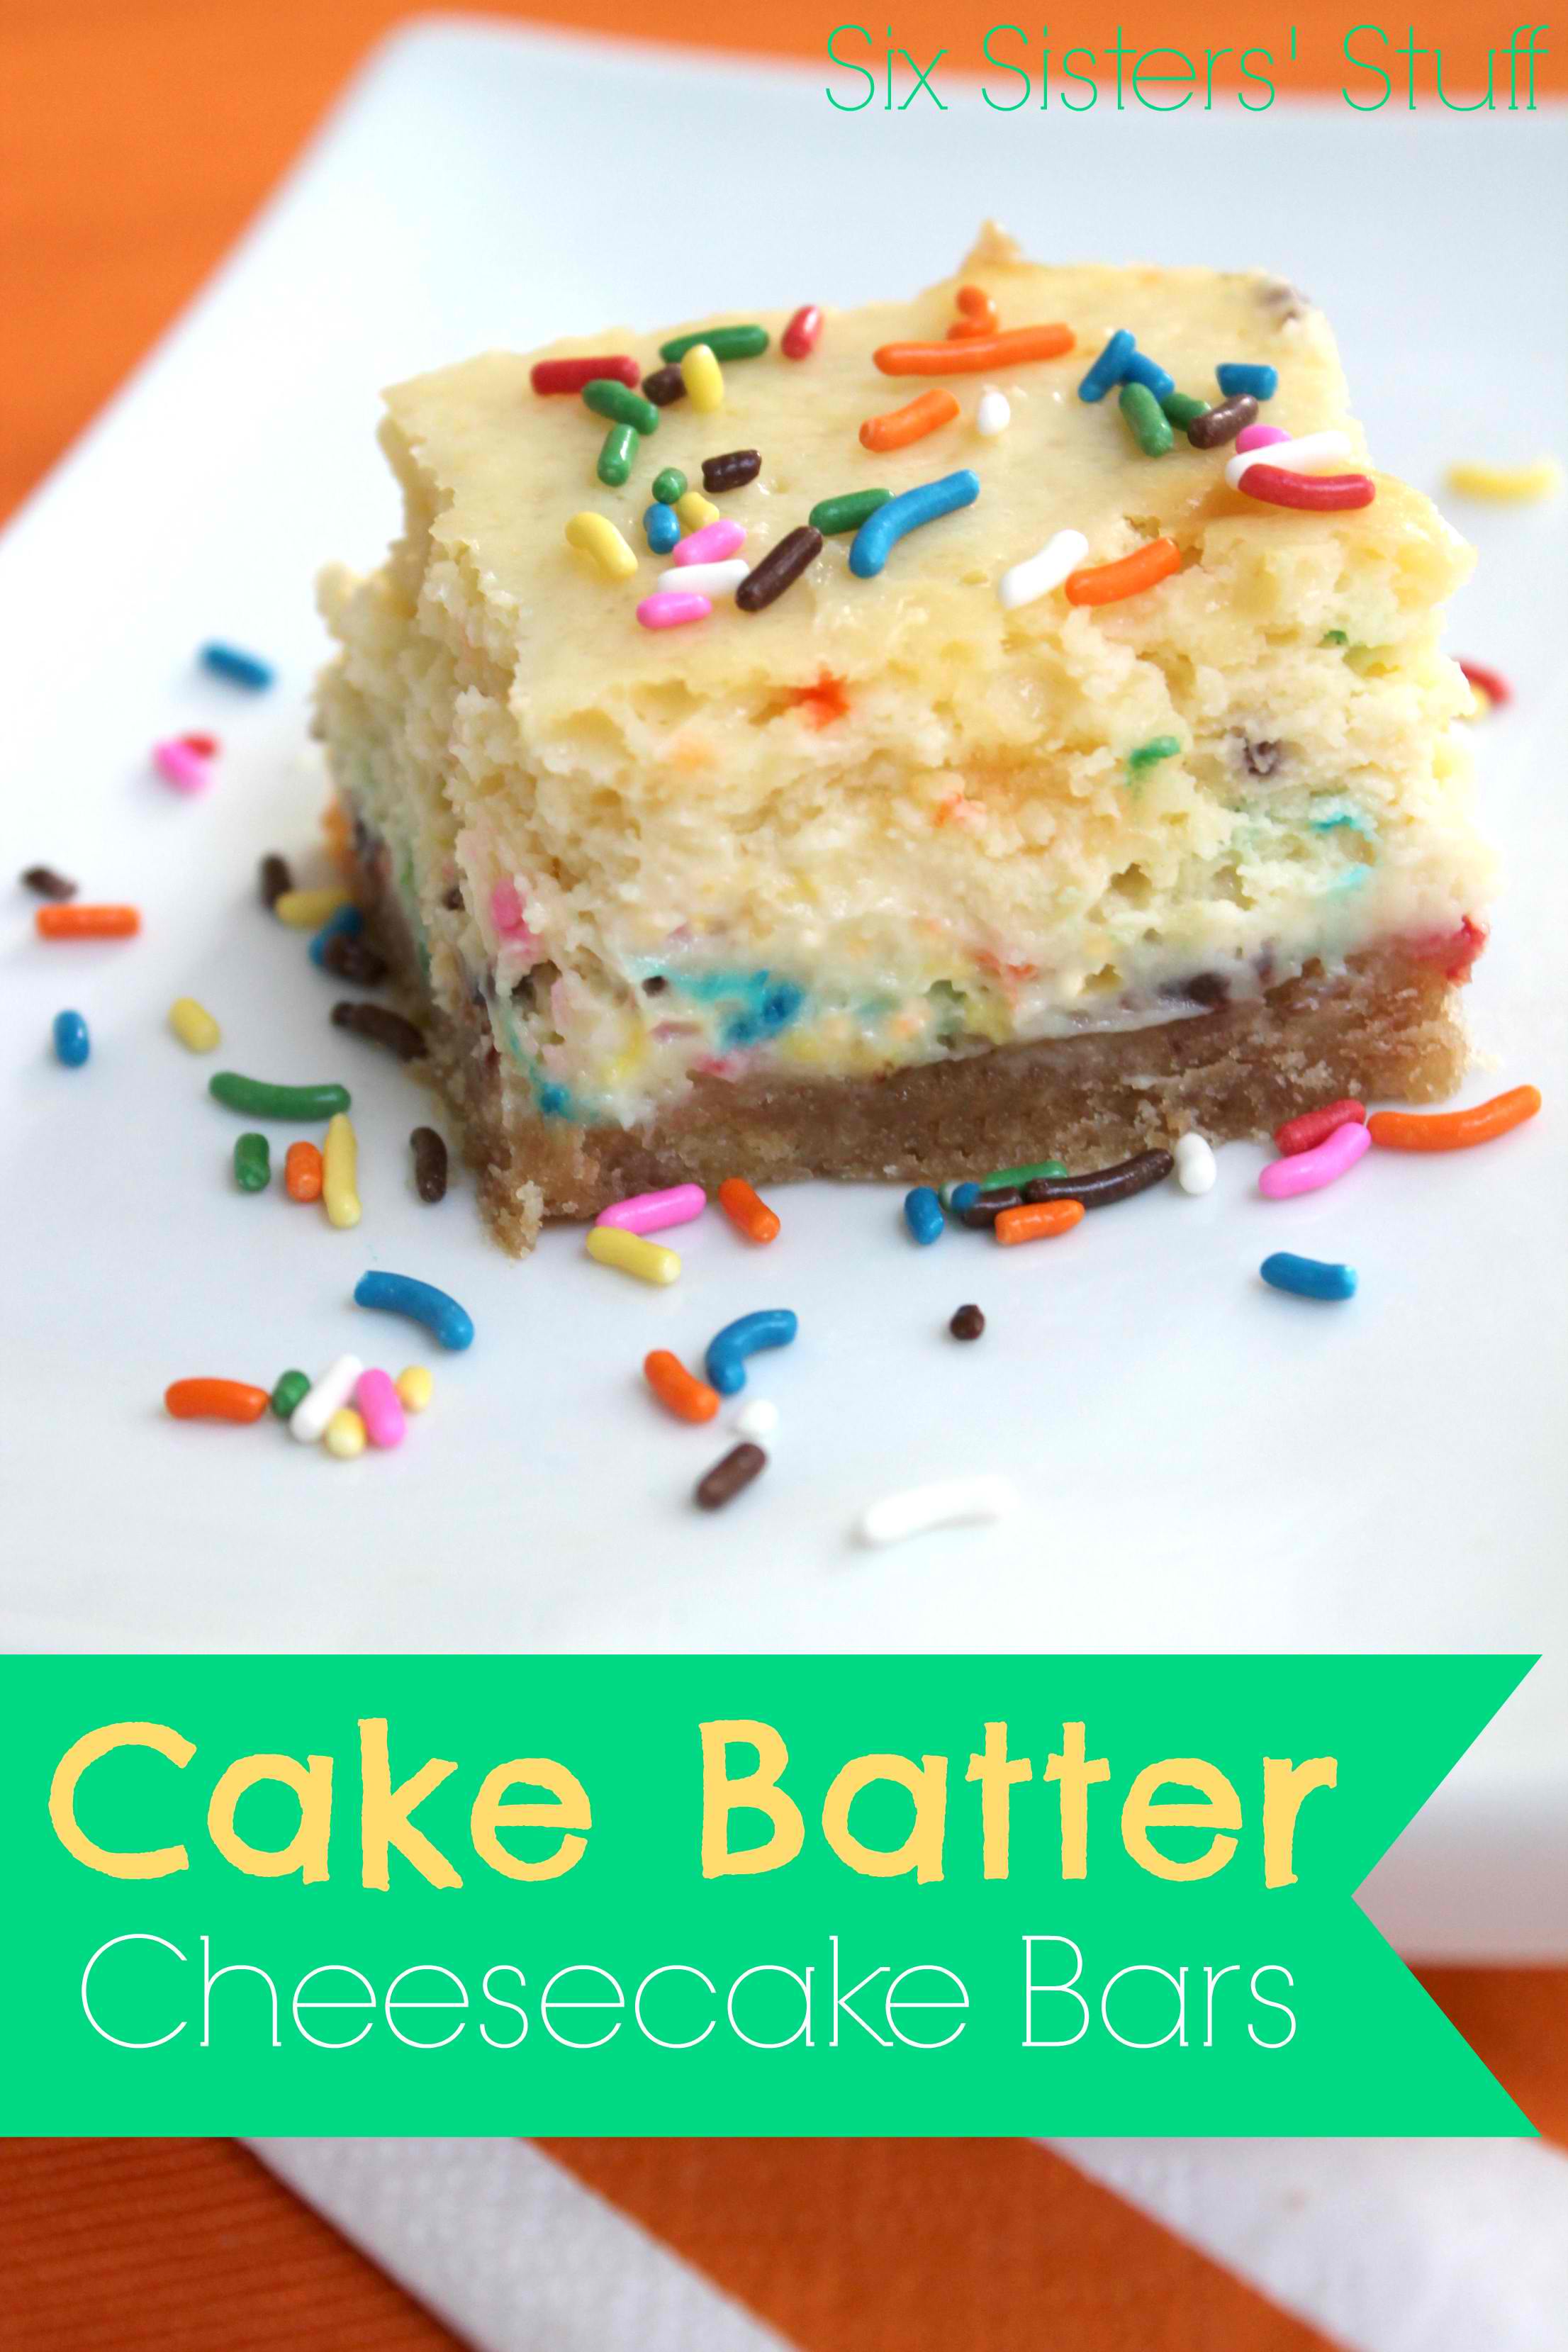 Cake Batter Cheesecake Bars